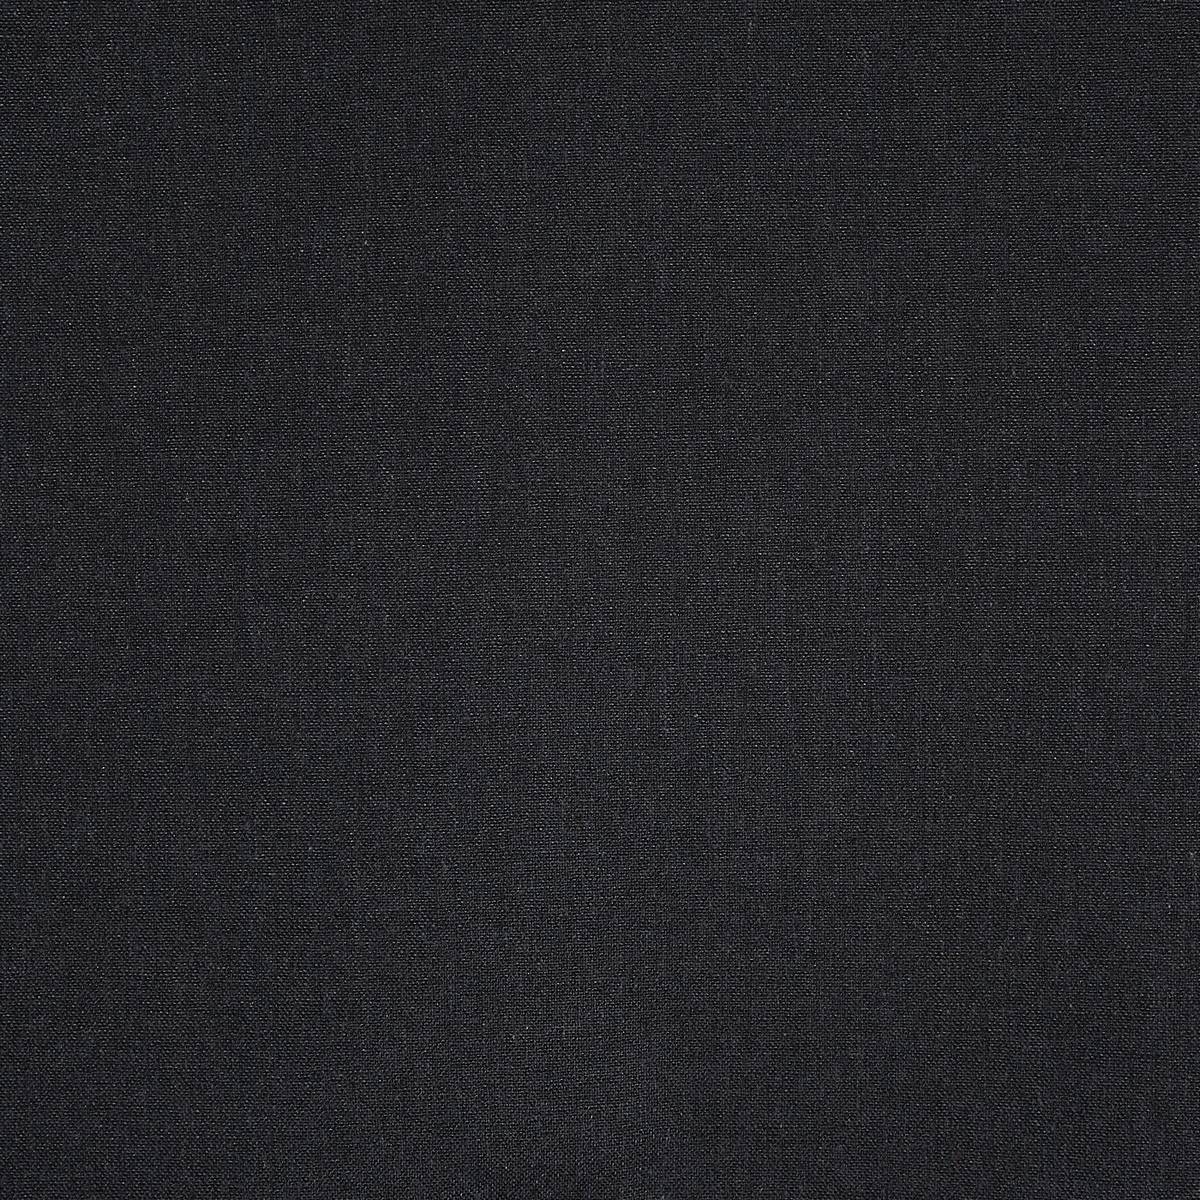 Saxon Black Fabric by Prestigious Textiles